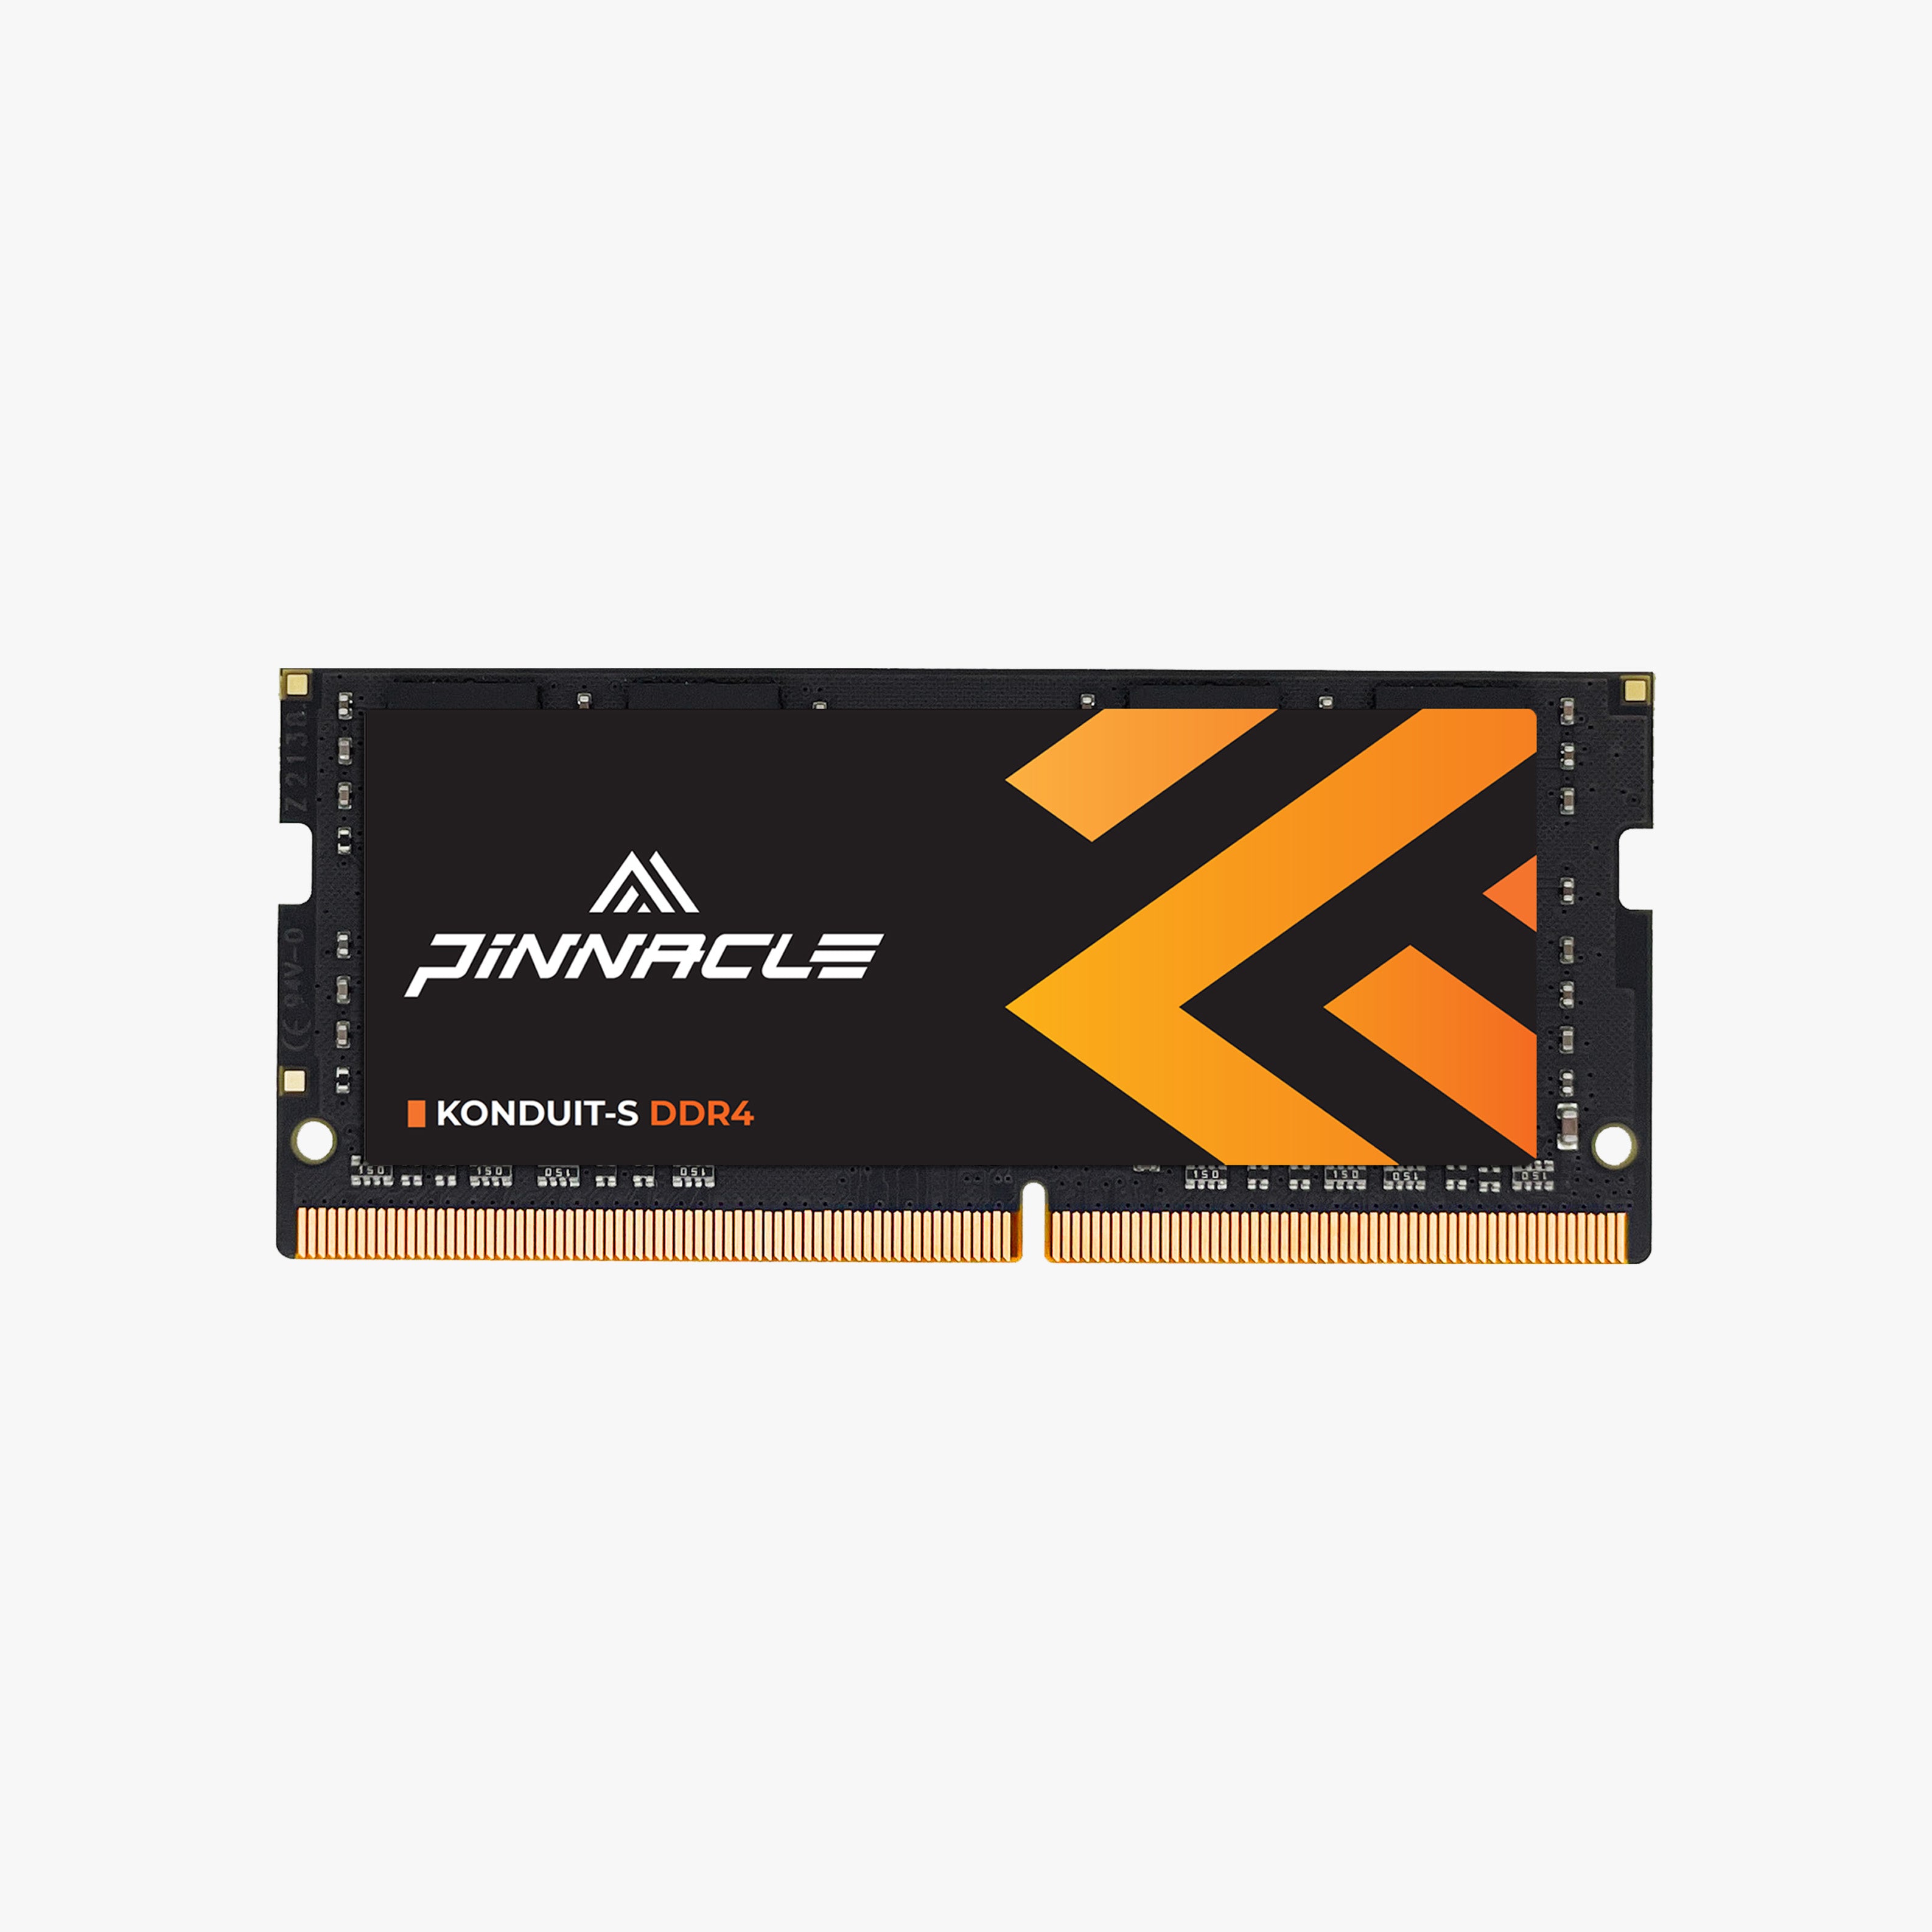 PINNACLE KONDUIT-S DDR4 SODIMM Laptop Memory